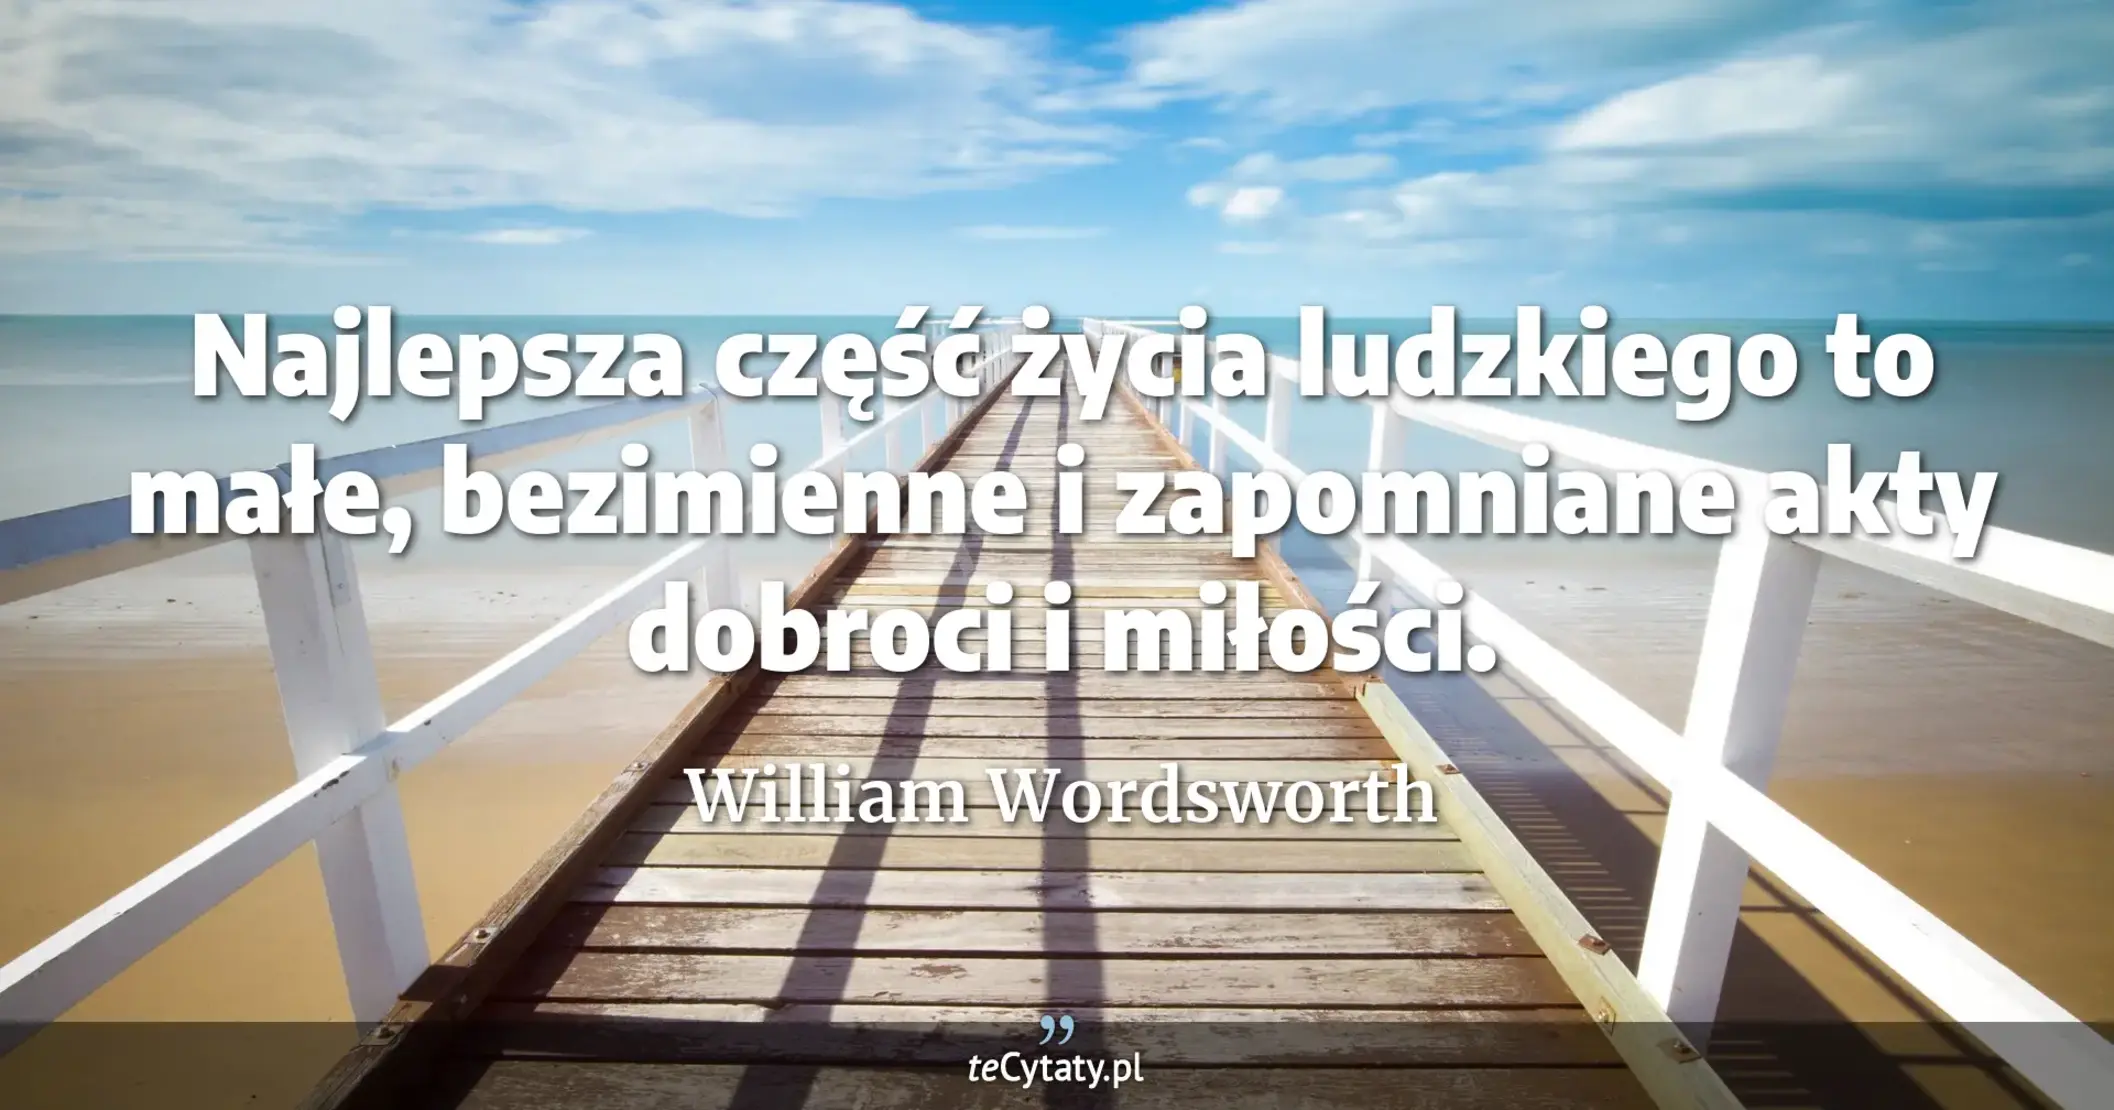 Najlepsza część życia ludzkiego to małe, bezimienne i zapomniane akty dobroci i miłości. - William Wordsworth